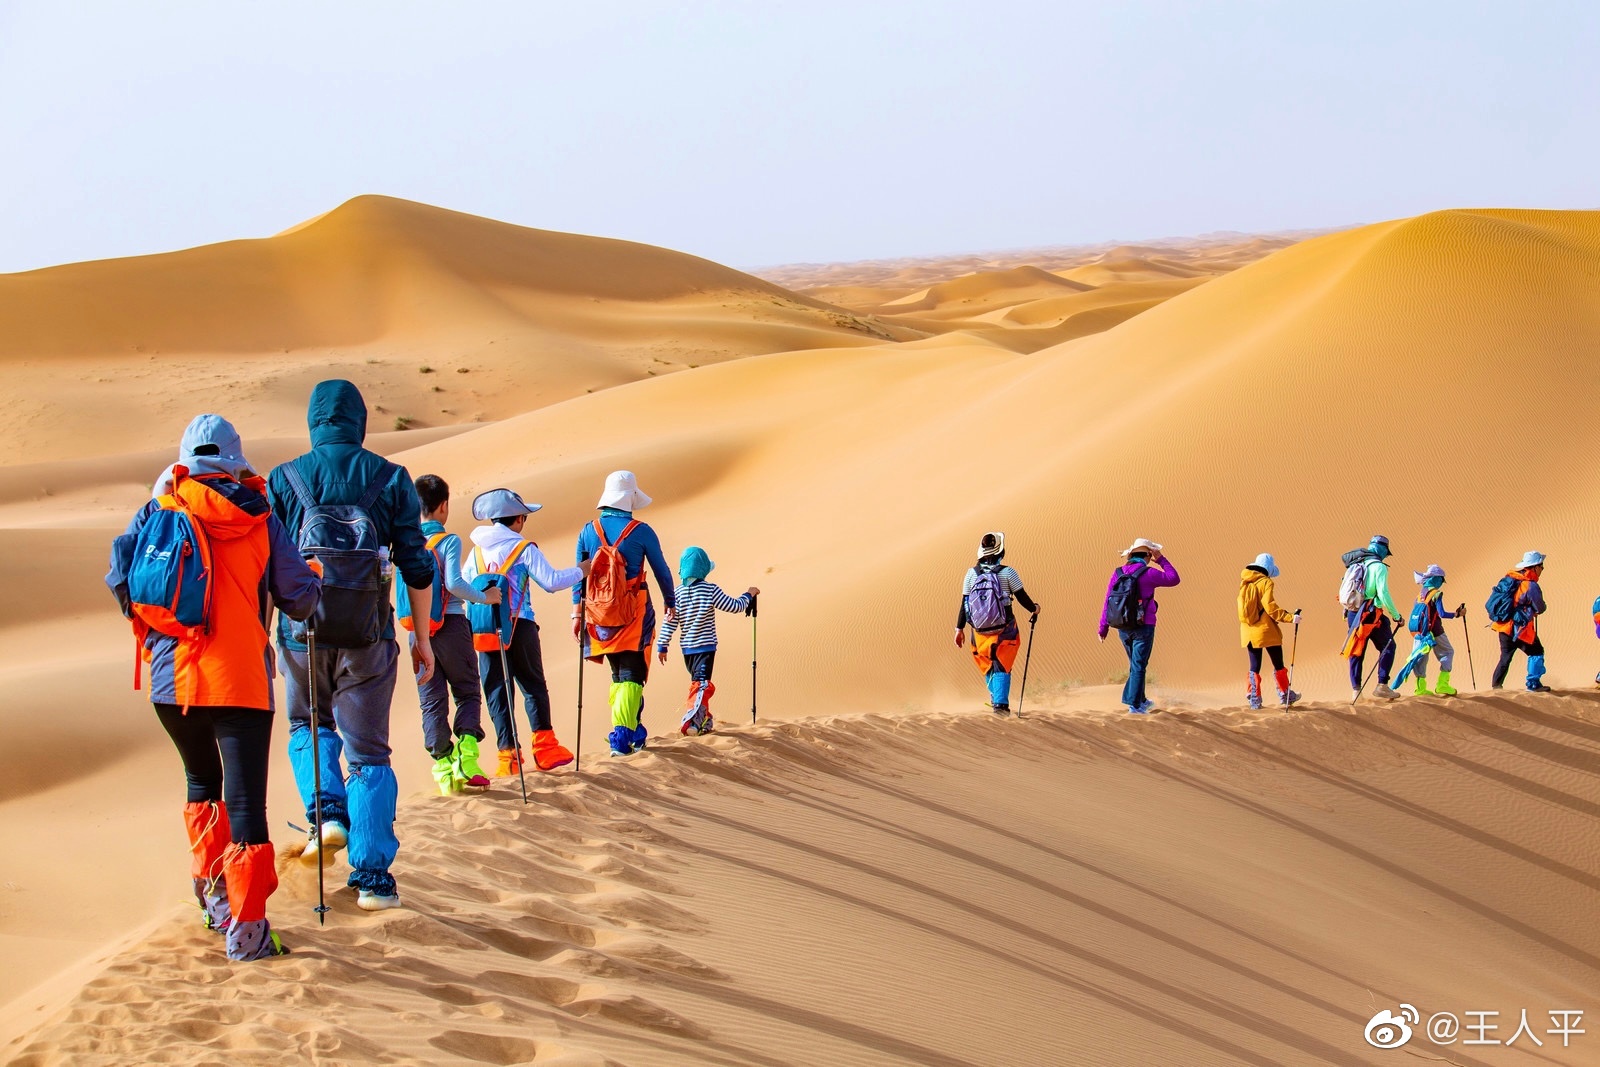 内盖夫沙漠风景迷航中的独行徒步者 库存照片. 图片 包括有 沙漠, 内盖夫, 火山口, 贫瘠, 女性, 横向 - 171775654